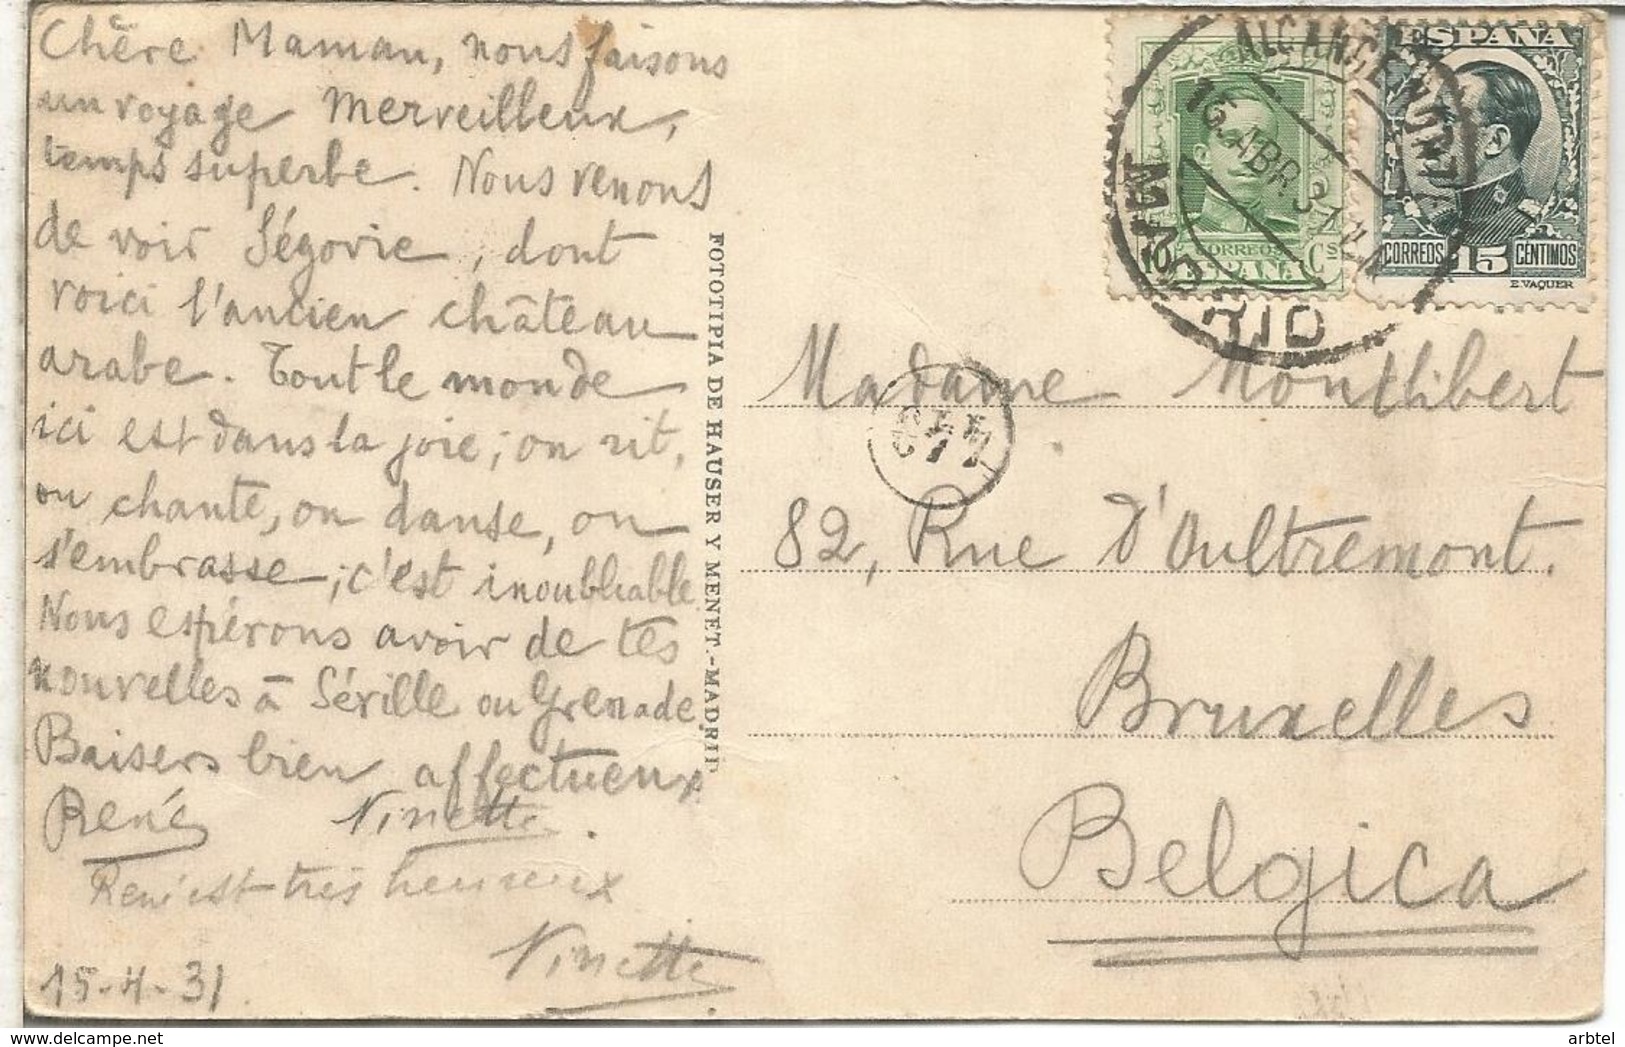 MADRID TP SEGOVIA MAT MADRID ALCANCE NORTE DEL 15 ABRIL DE 1931 SELLOS ALFONSO XIII VAQUER - Briefe U. Dokumente